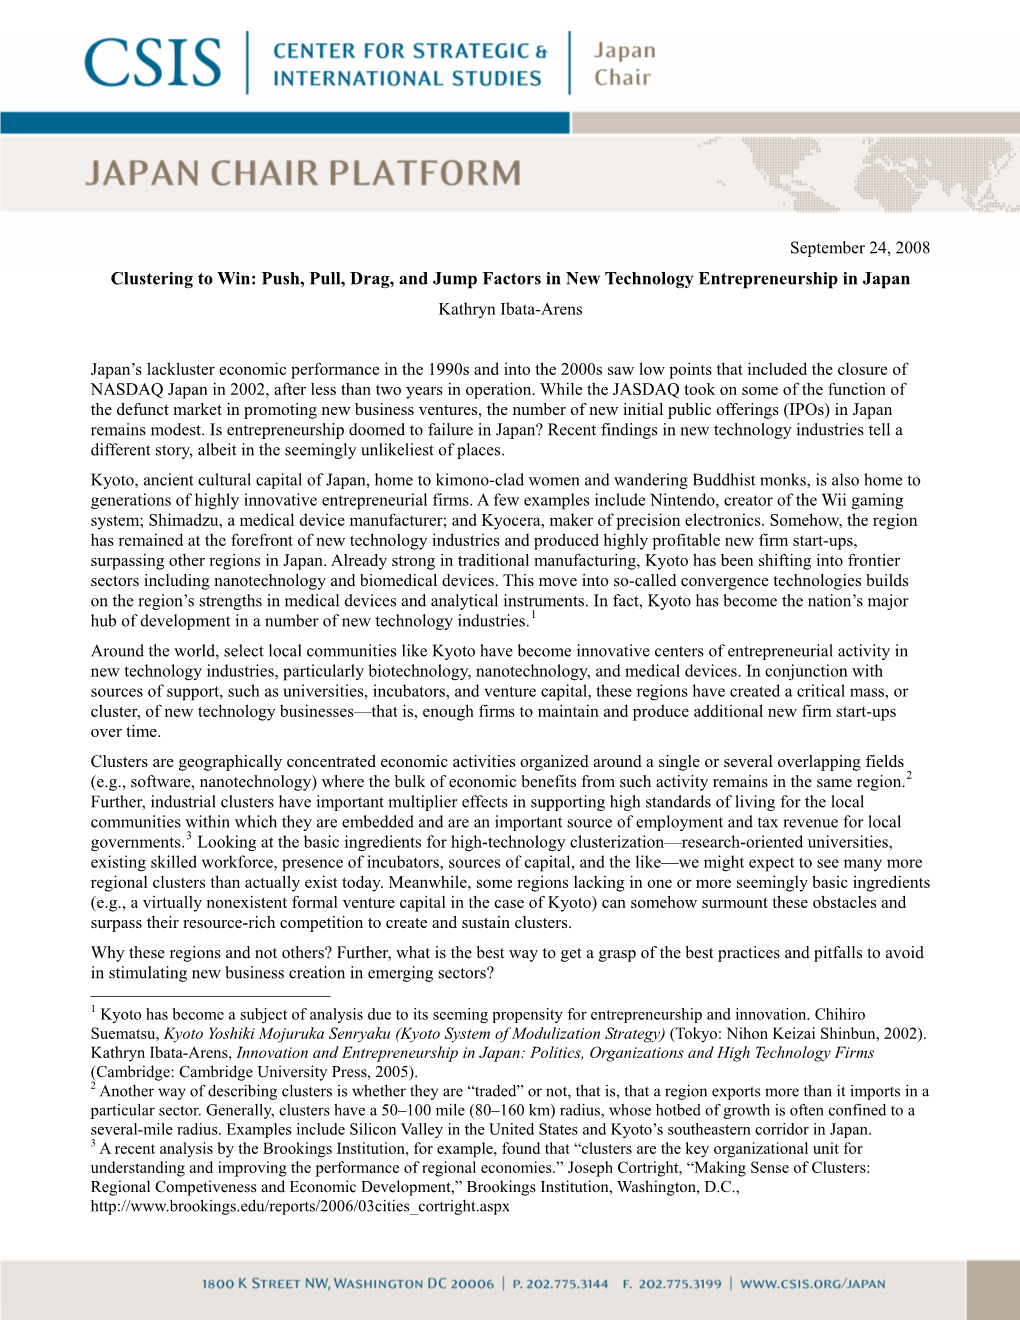 Japan Chair Platform